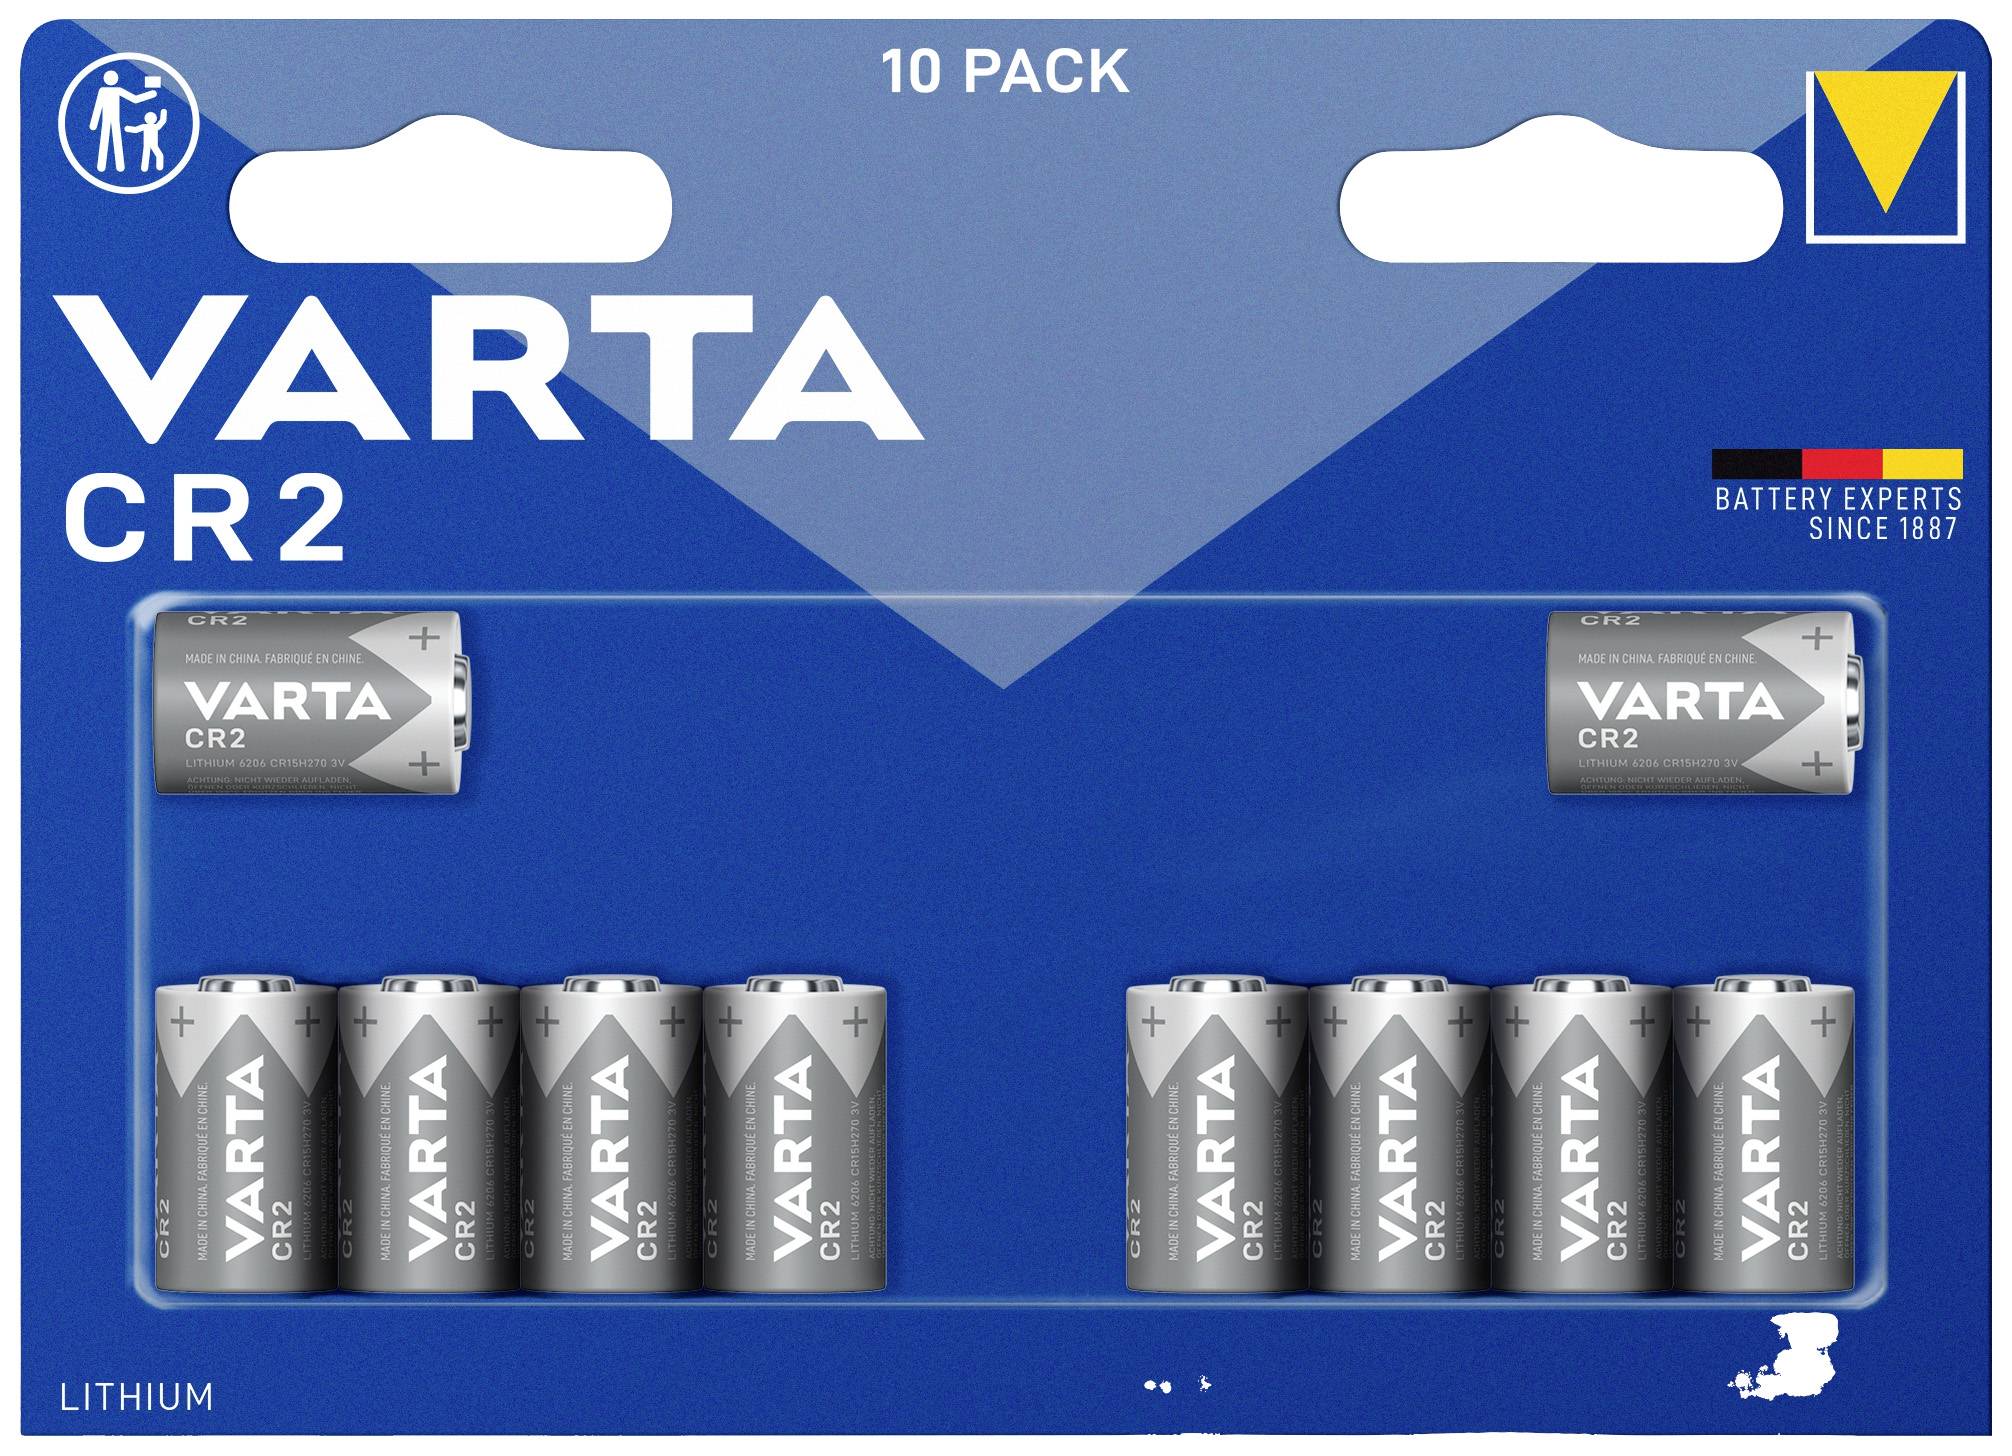 VARTA CR 2 SP - Lithium Batterie, CR2, 920 mAh, 10er-Pack (6206301461)